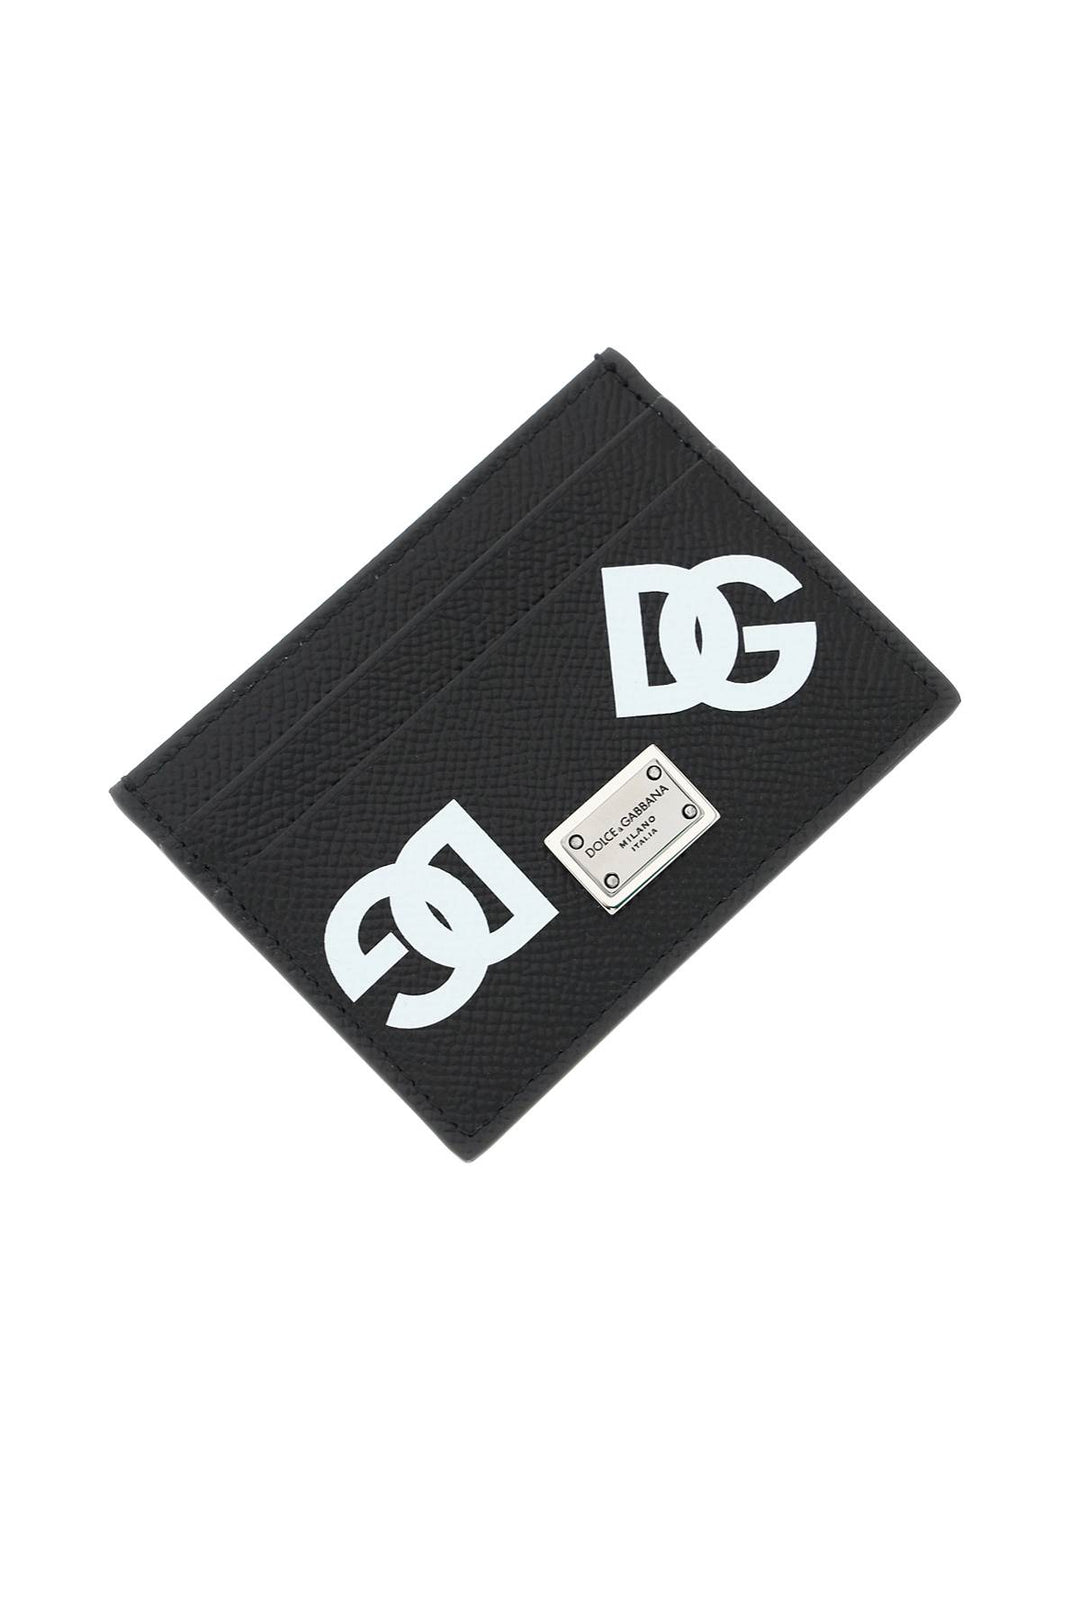 Porta Carte Con Stampa - Dolce & Gabbana - Uomo